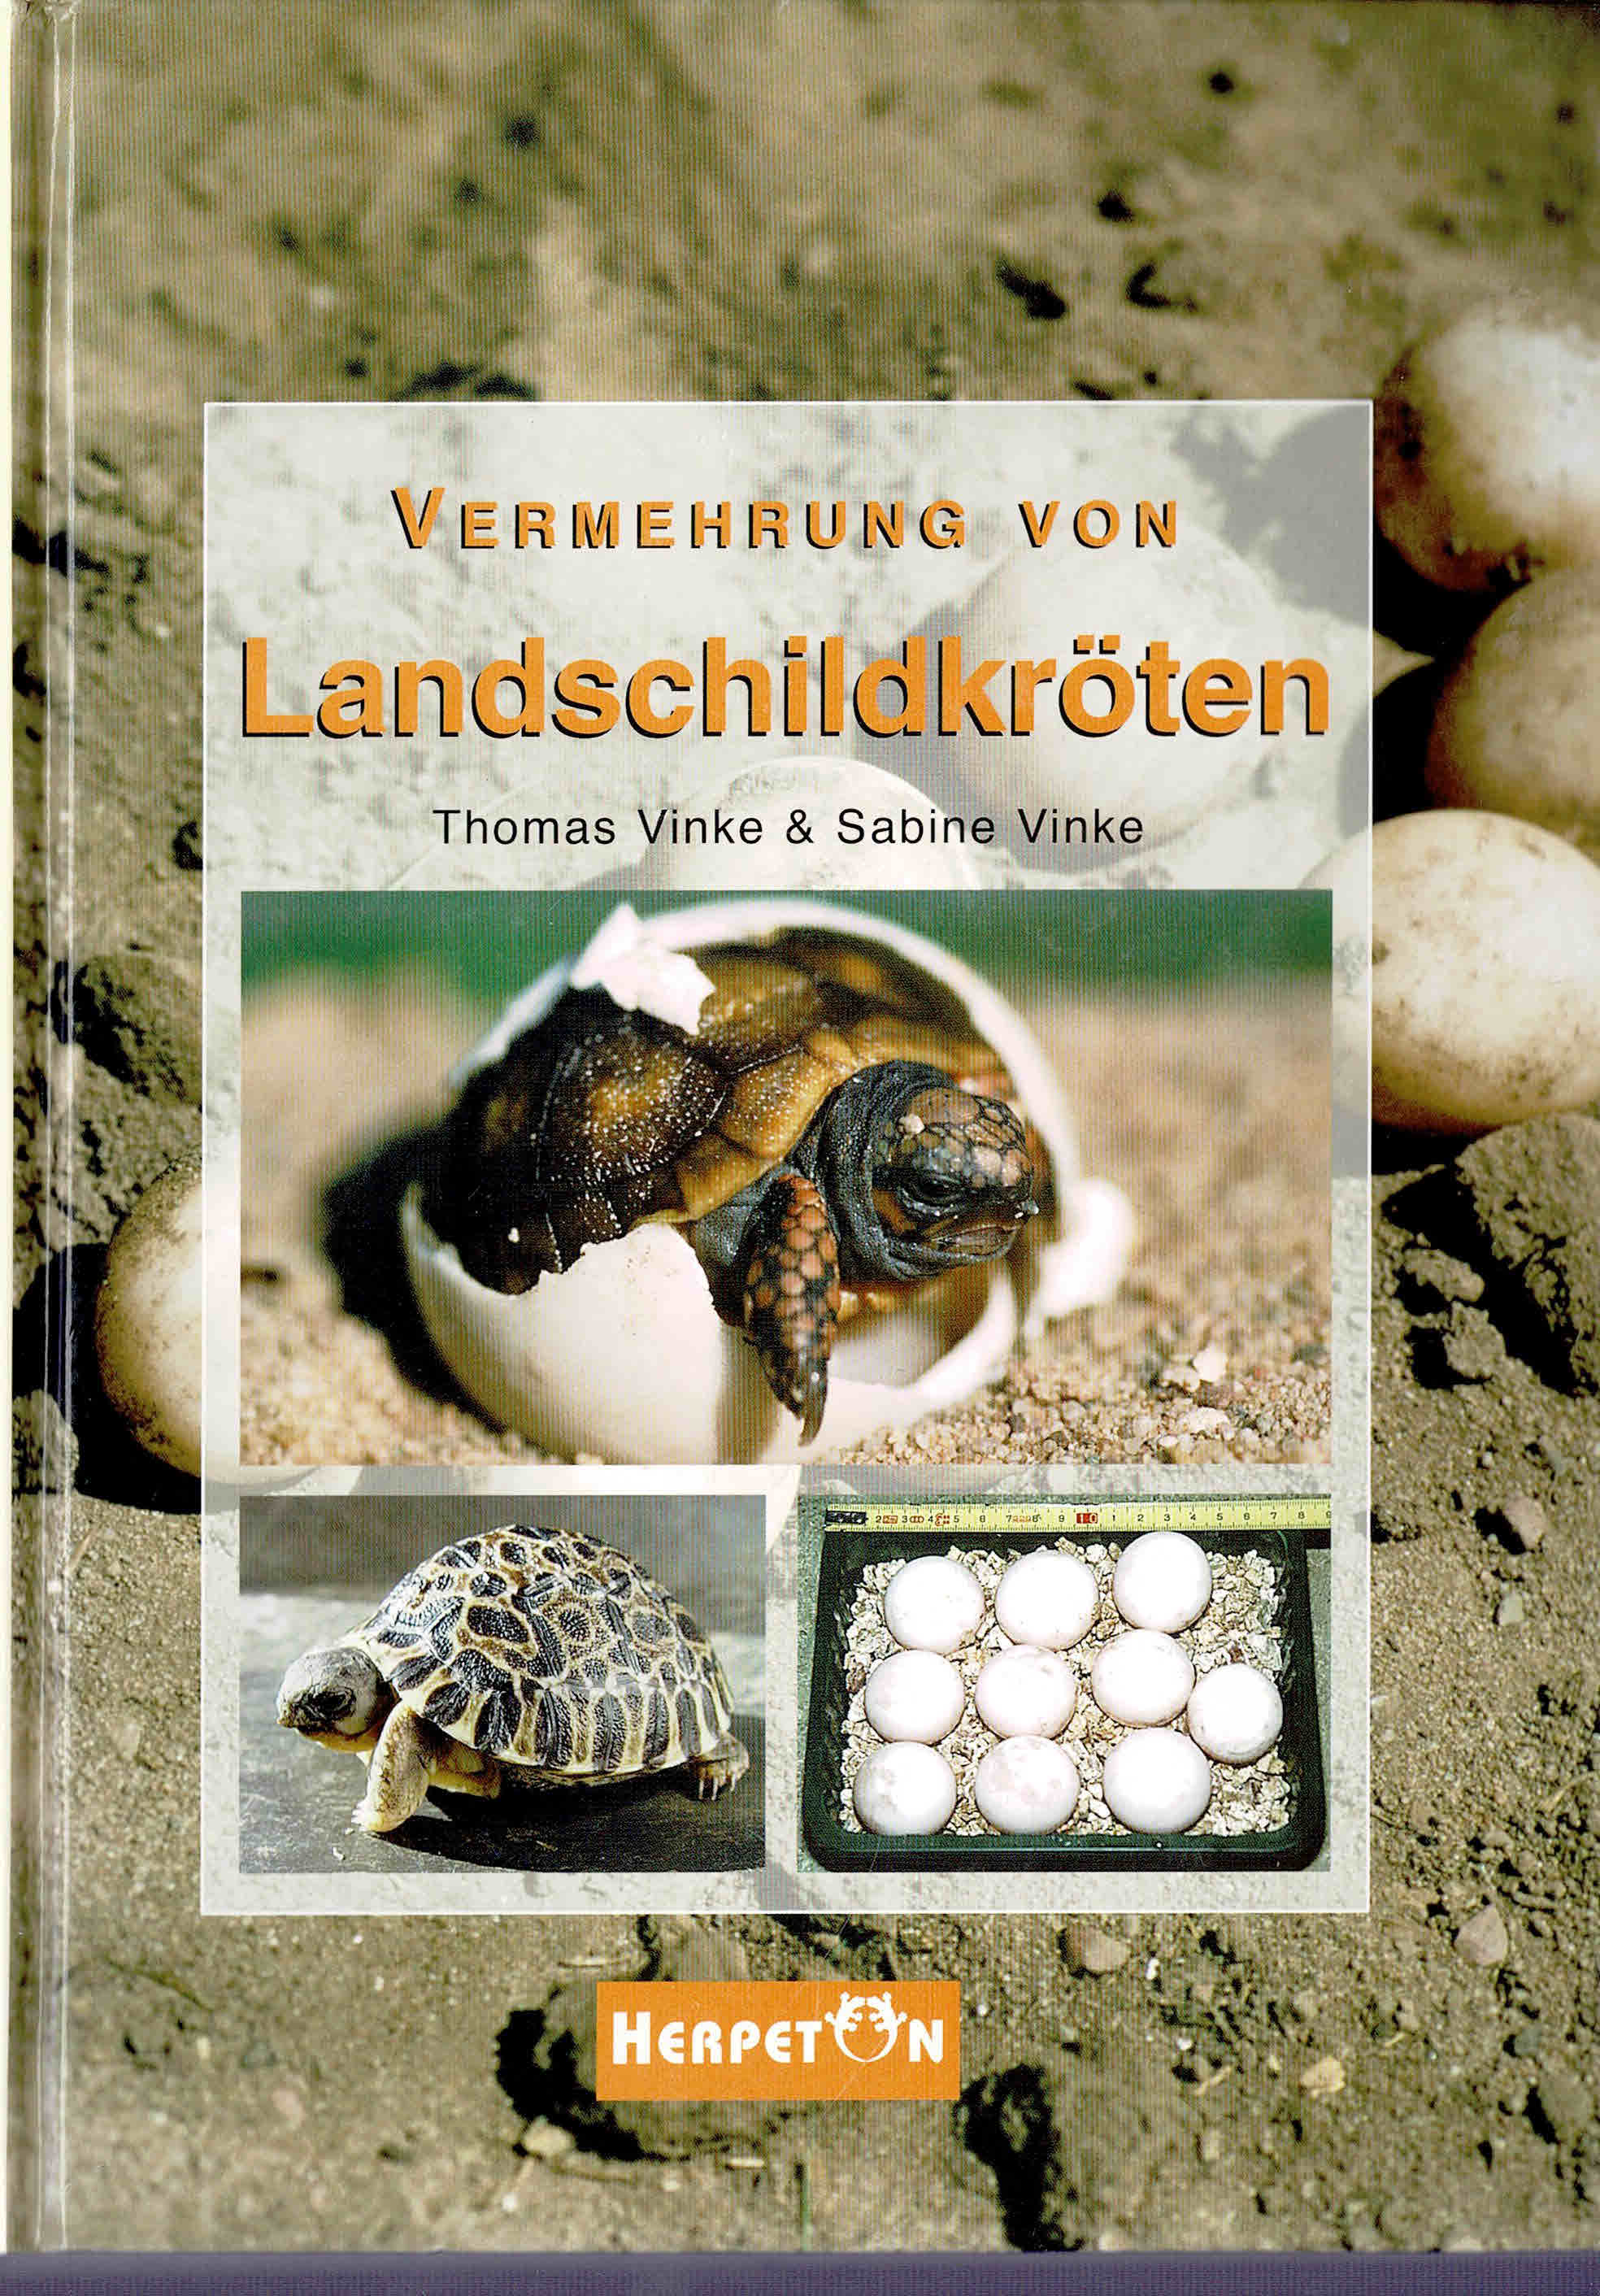 Vermehrung von Landschildkröten: Grundlagen, Anleitungen und Erfahrungen zur erfolgreichen Zucht (2004) - Vinke, Thomas / Vinke, Sabine